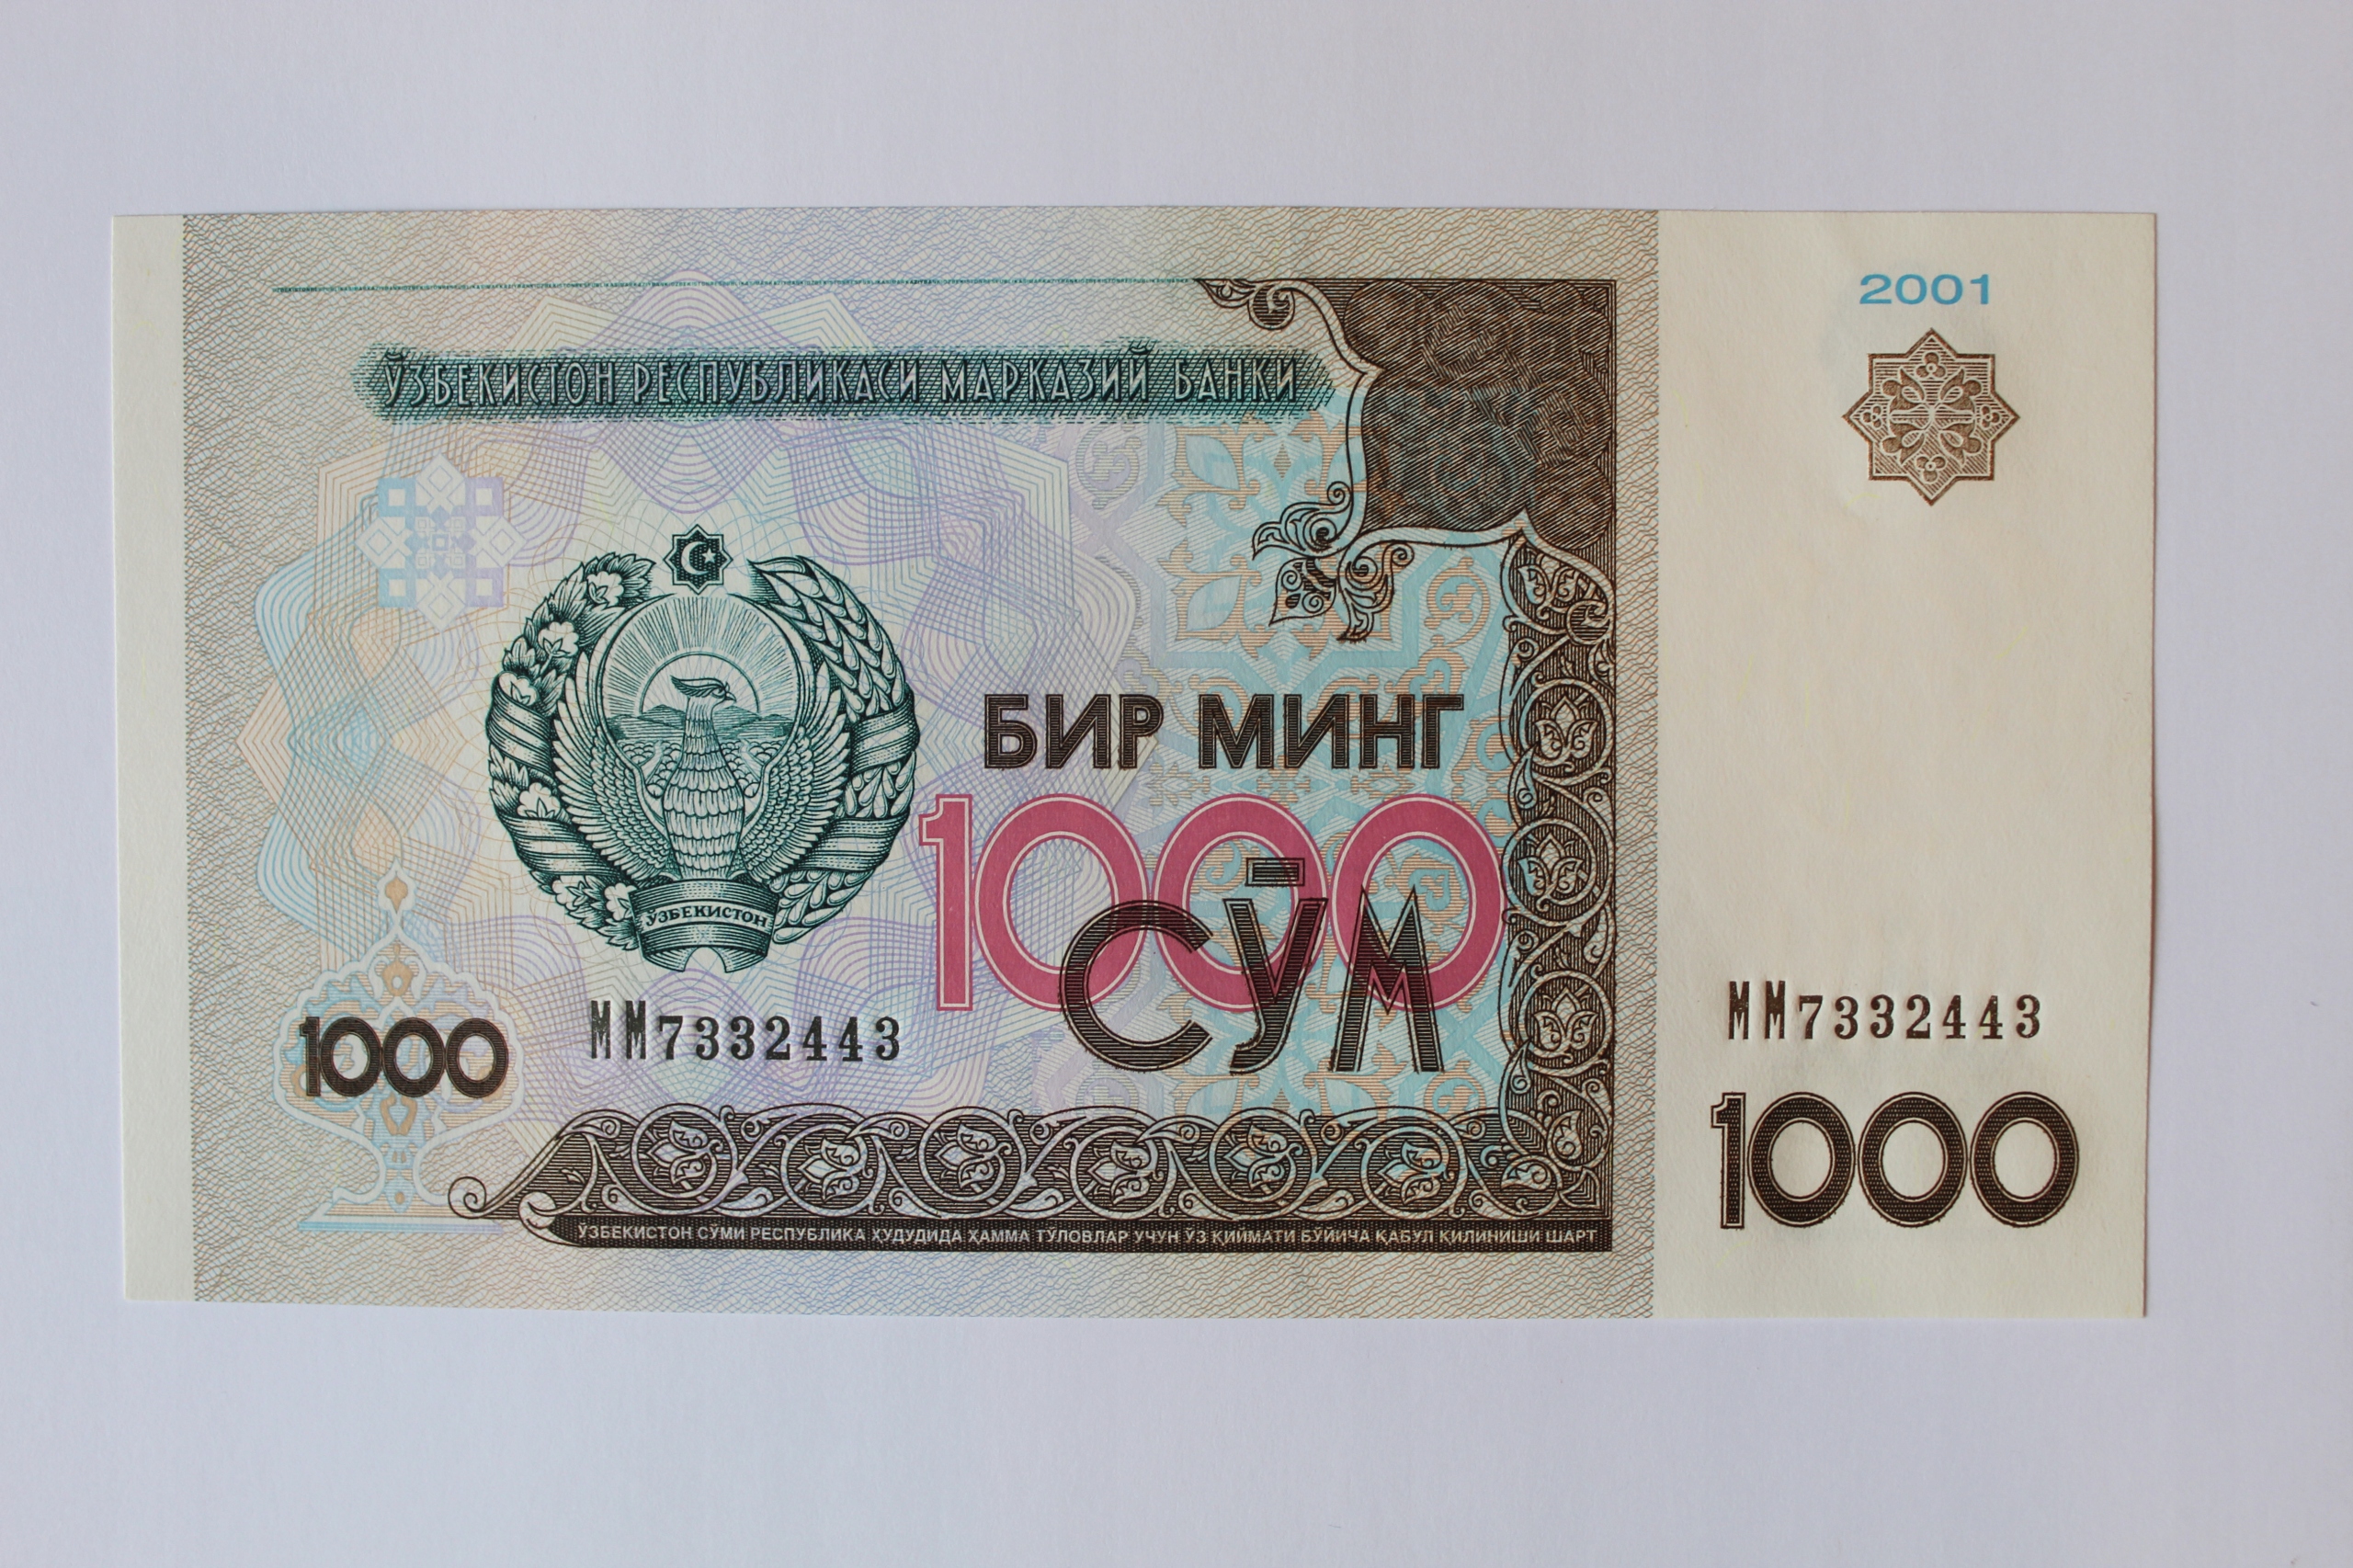 1000 р сум. "1000 Сум 2001". Узбекистан 1000 сум 2001. Банкнота Узбекистана 1000 сум 2001 года. 1000 Сомов Узбекистан.